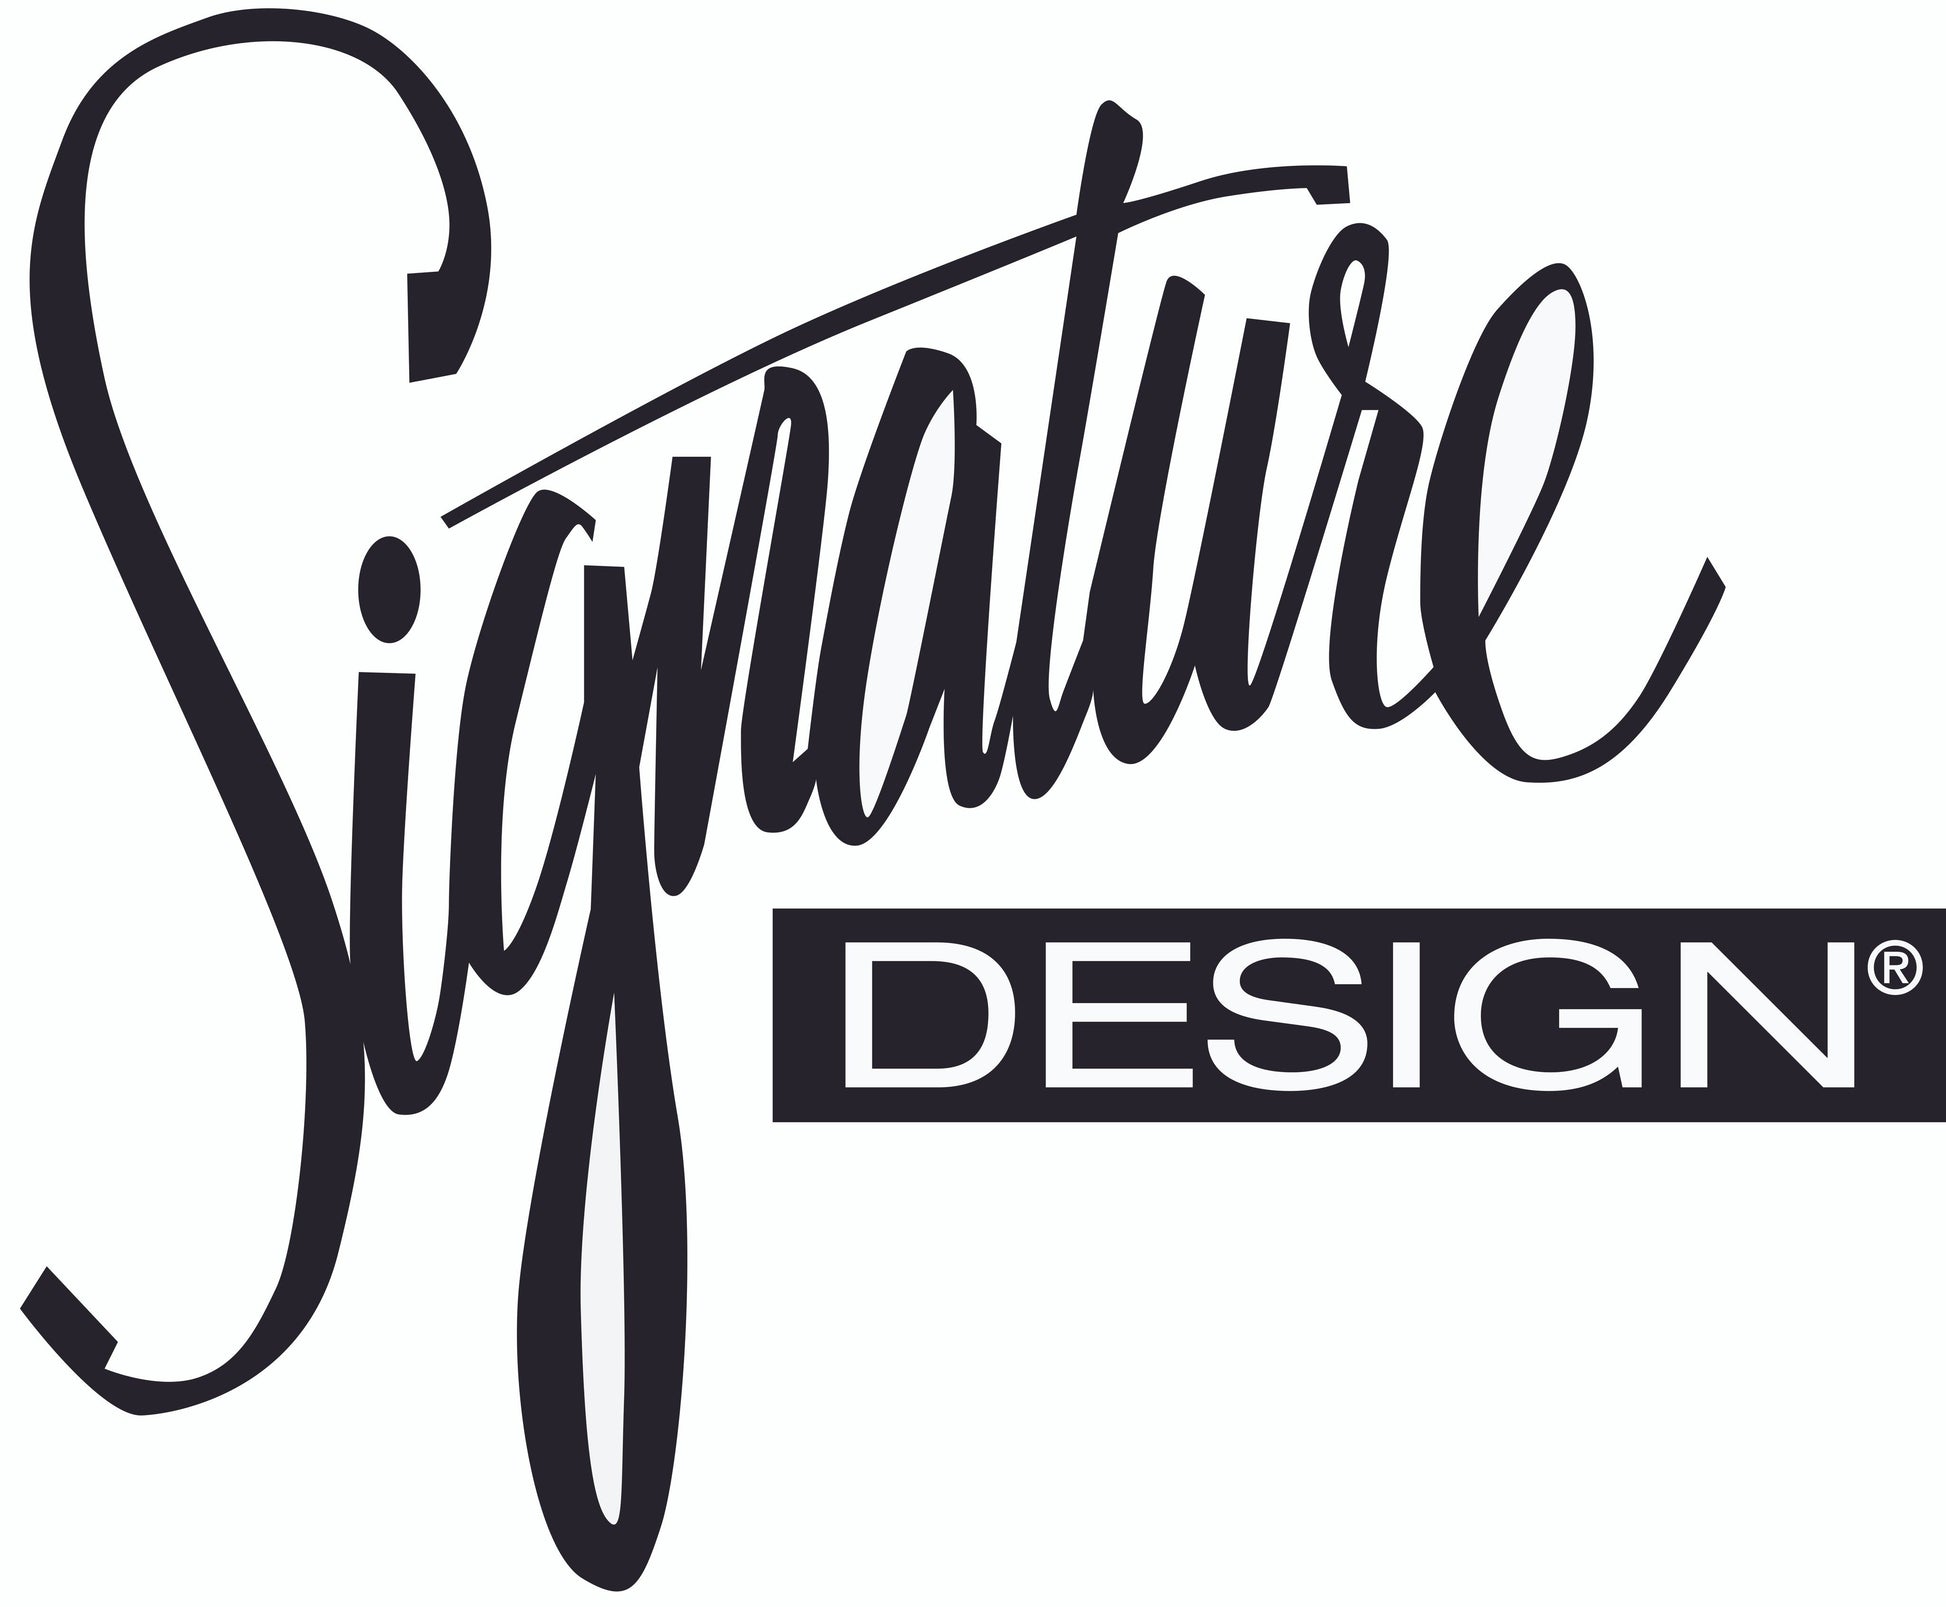 Cascilla Chair Signature Design by Ashley®